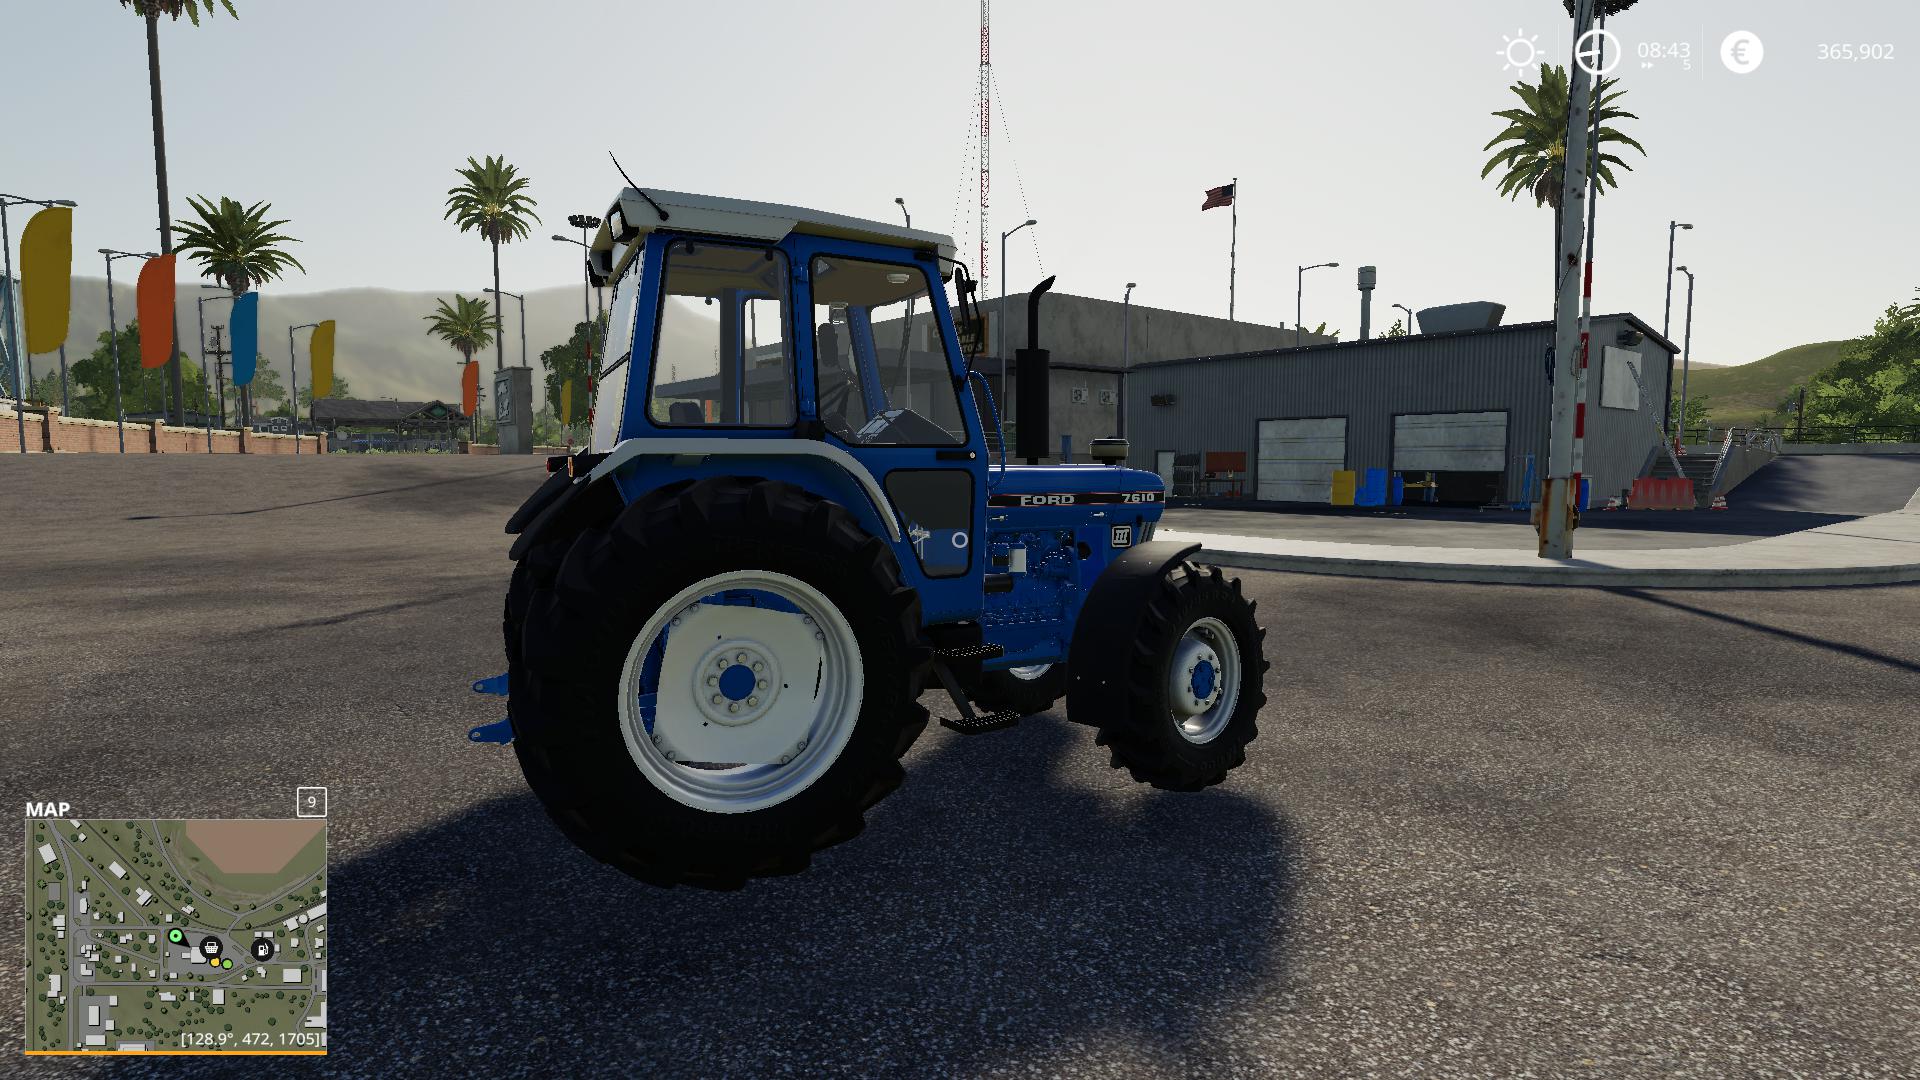 Fs19 Ford 7610 Tractor V10 Farming Simulator 19 Modsclub 9315